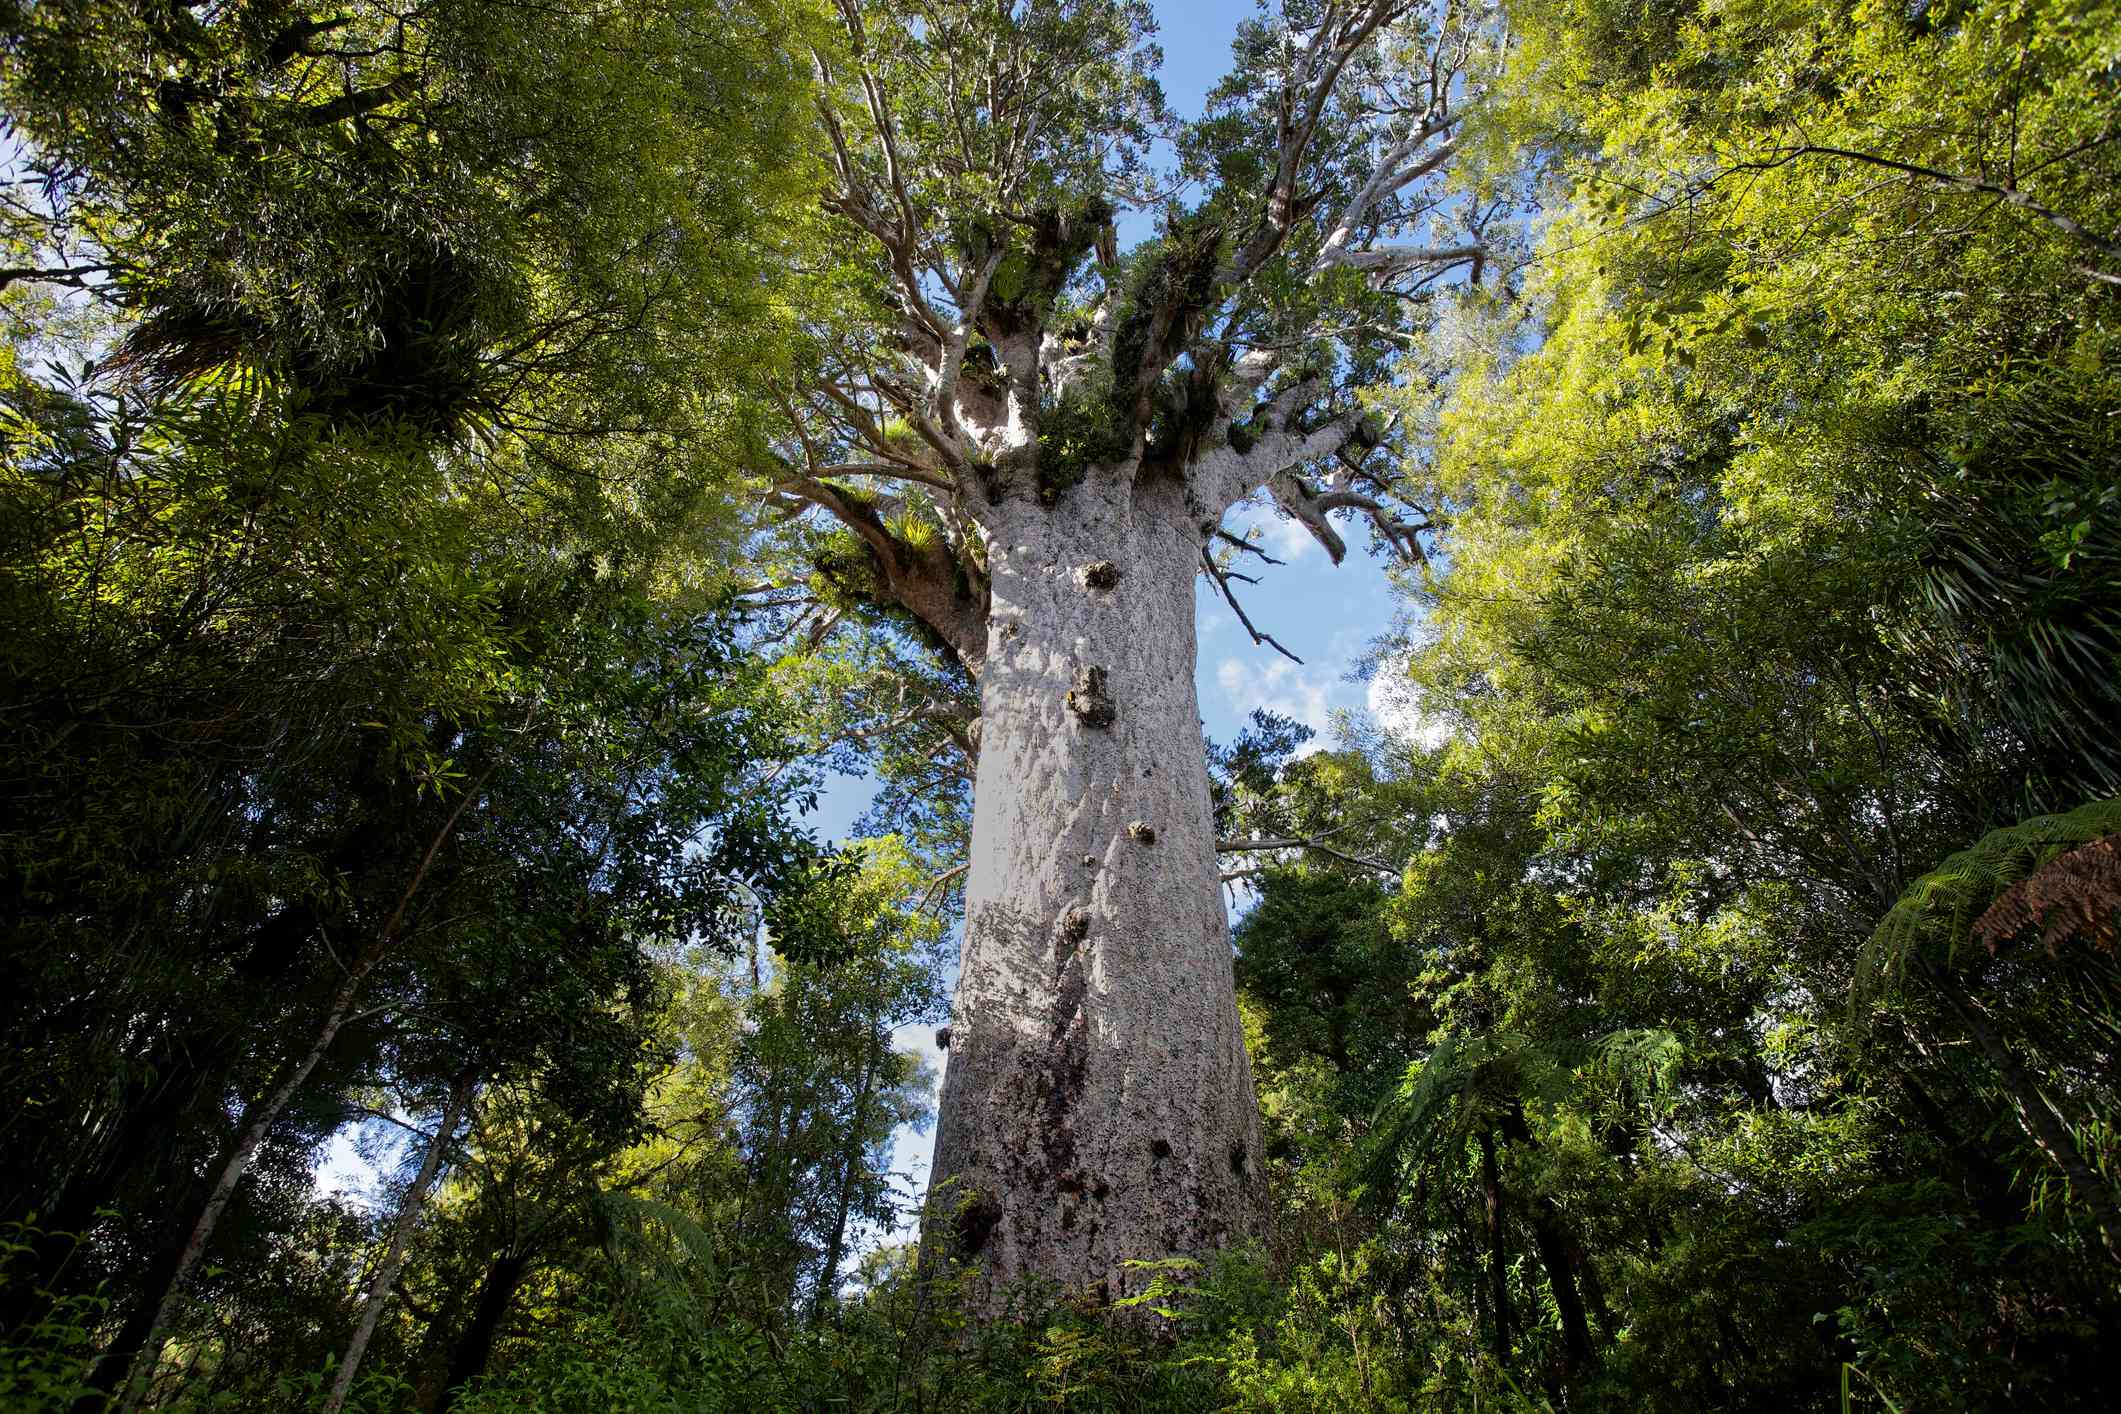 mirando al gigantesco árbol kauri blanco entre árboles verdes más pequeños